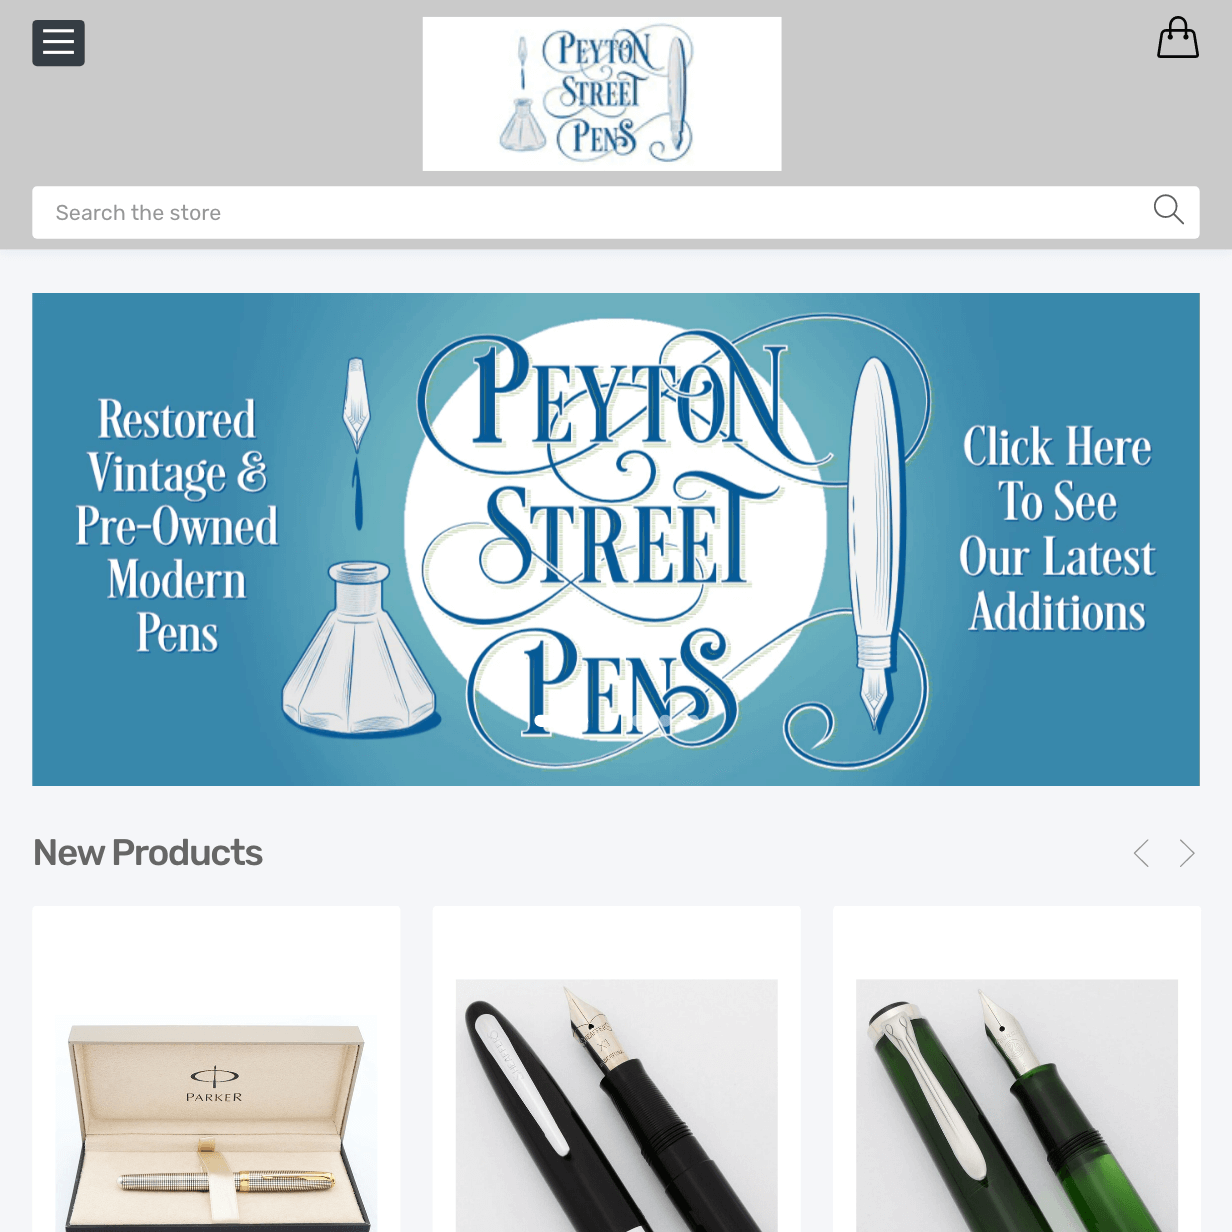 Peyton Street Pens